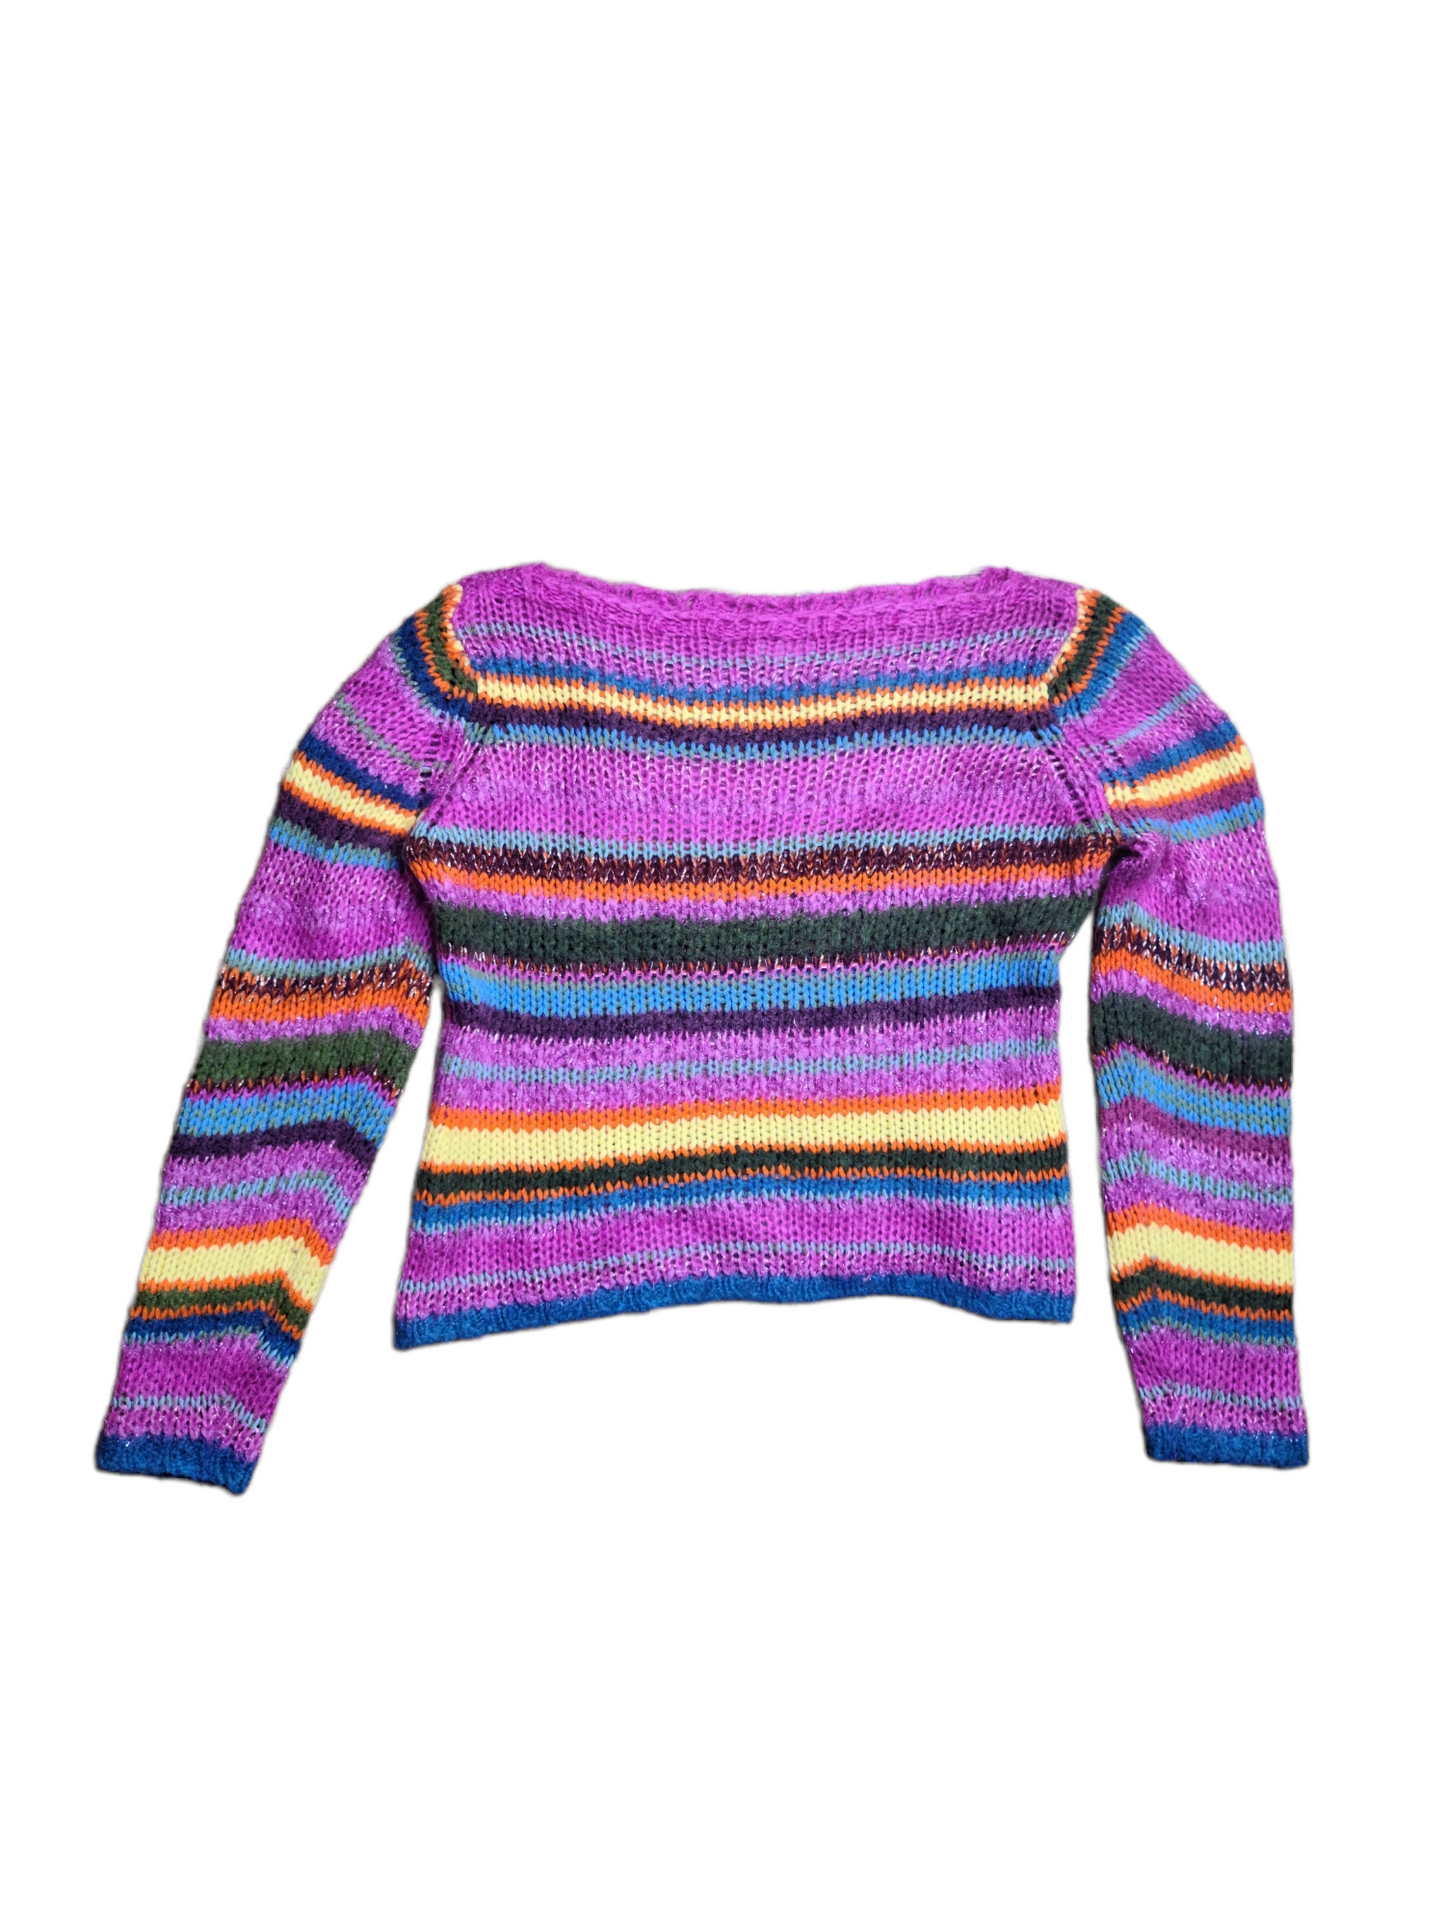 Pull crochet vintage multicolore fancy glitter y2k aesthetic cute